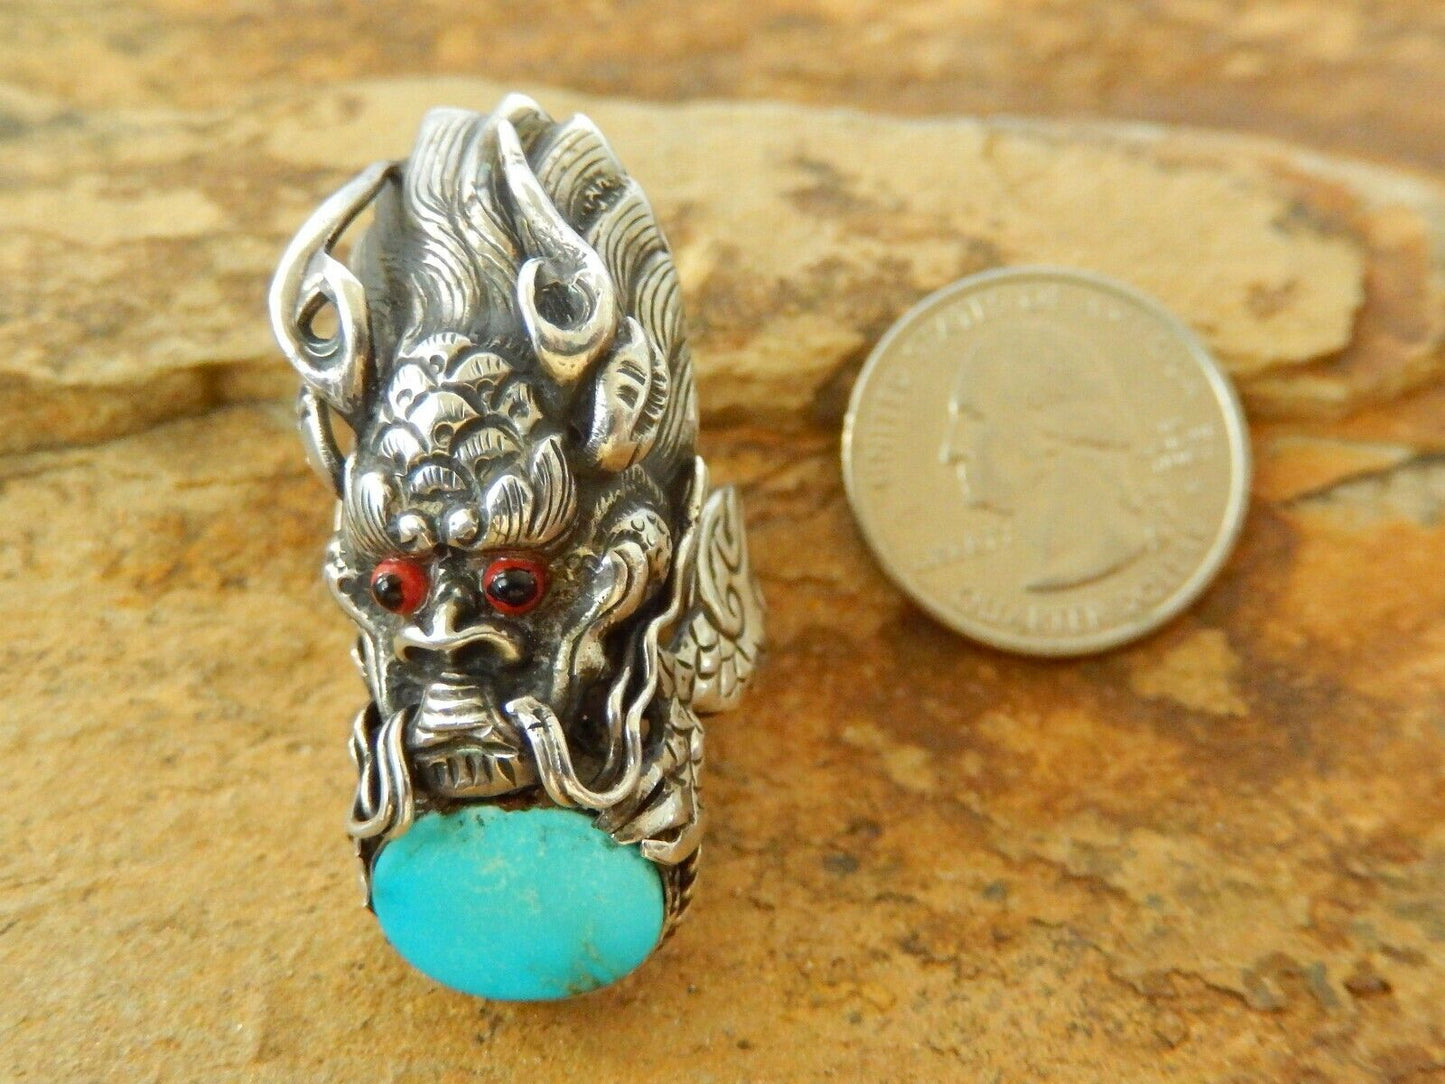 *VINTAGE* Large 1.75" Demon Devil Monster Sterling Silver Turquoise Ring Size 8